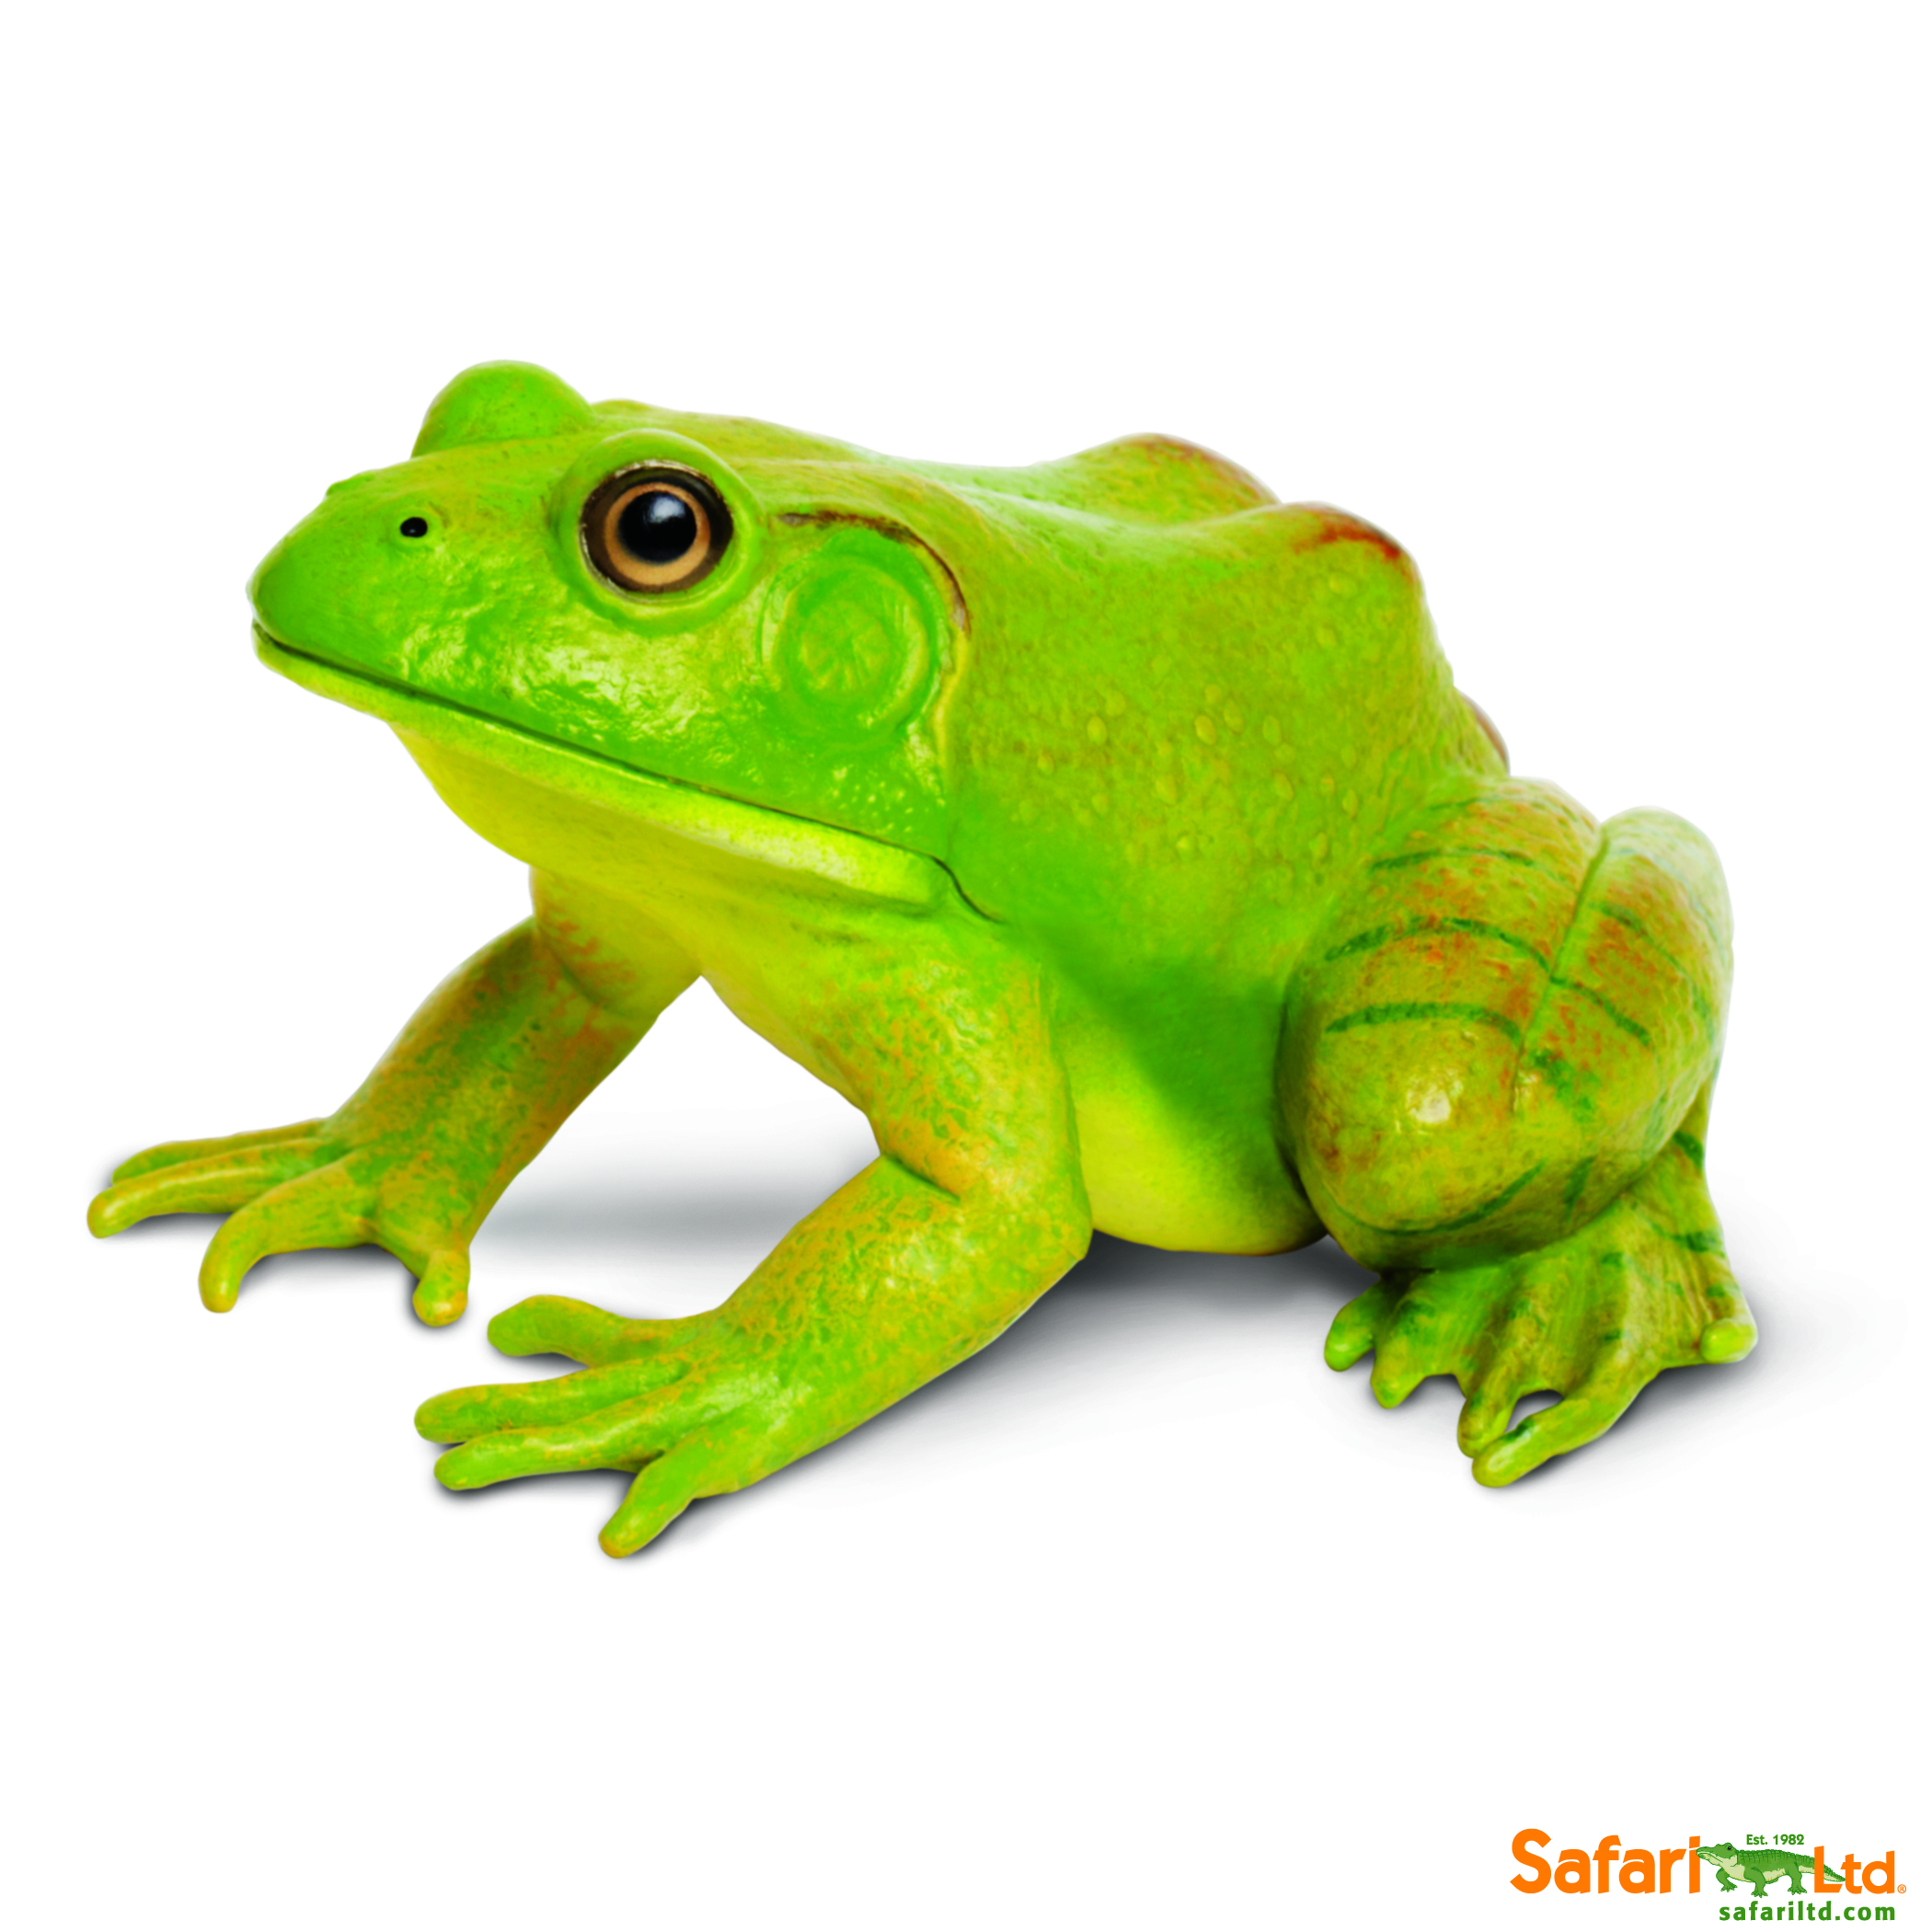 Education Essentials - Safari Ltd American Bullfrog